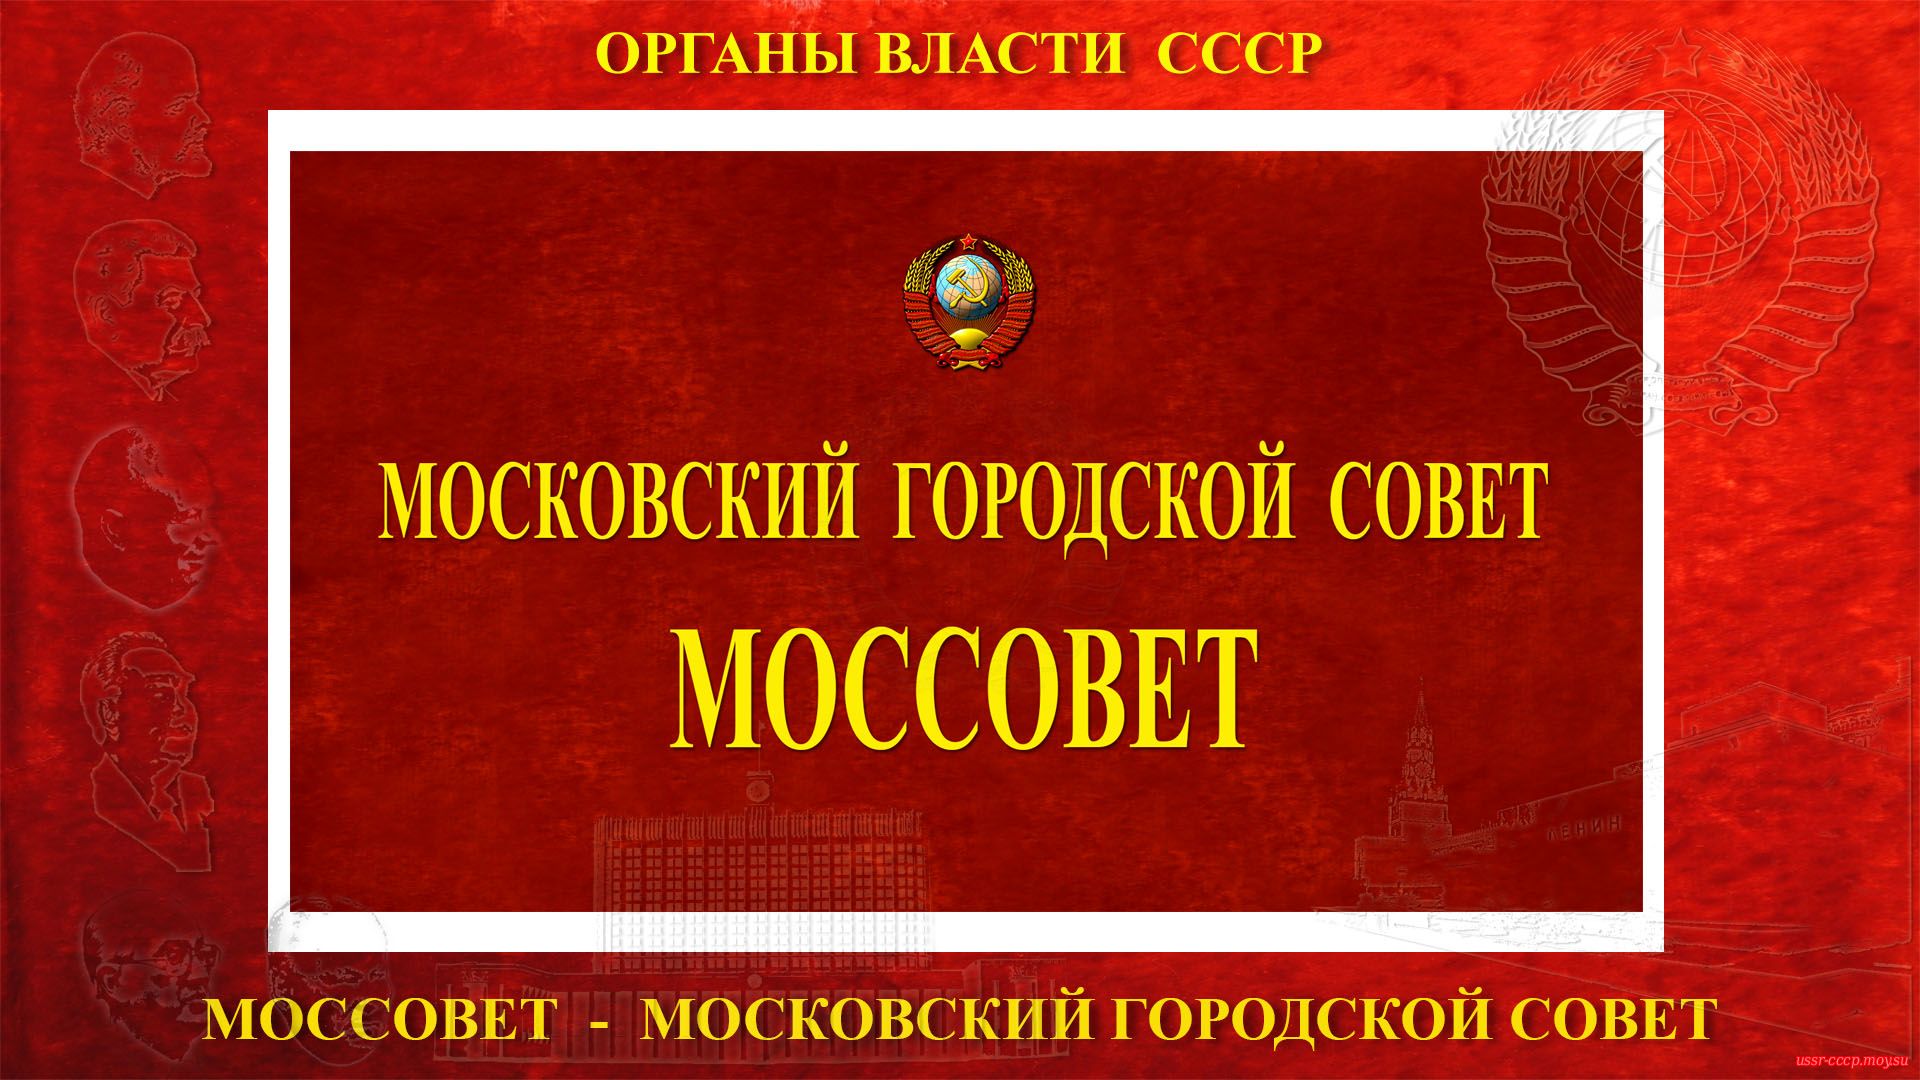 Моссовет — Московский городской совет